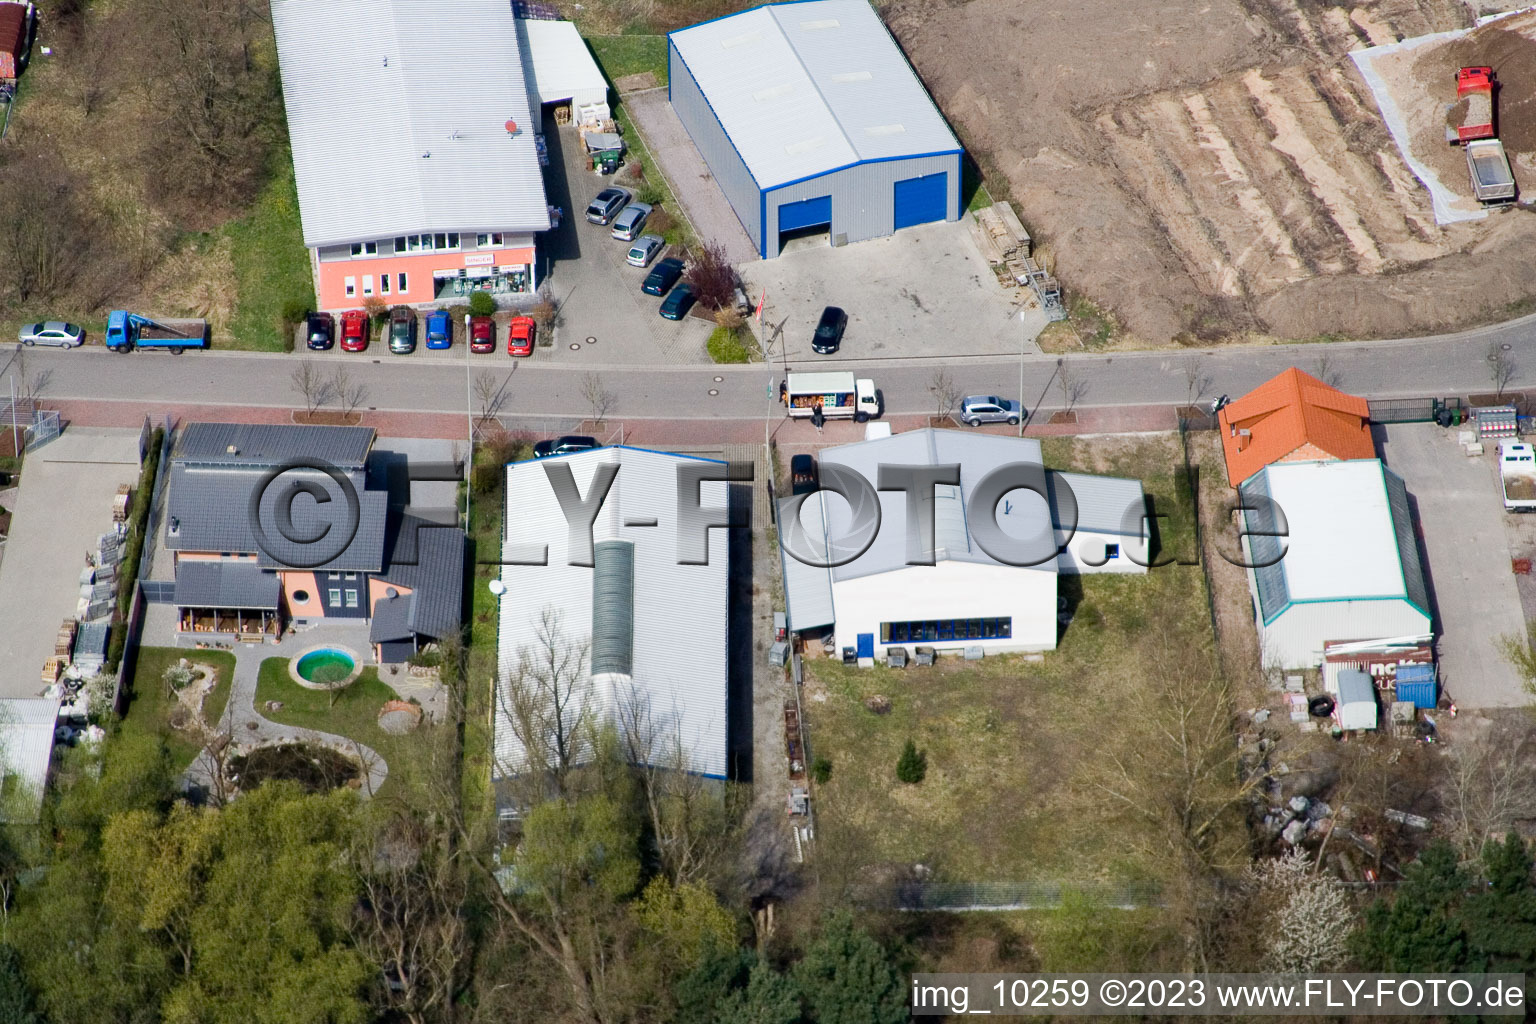 Jockgrim dans le département Rhénanie-Palatinat, Allemagne vu d'un drone